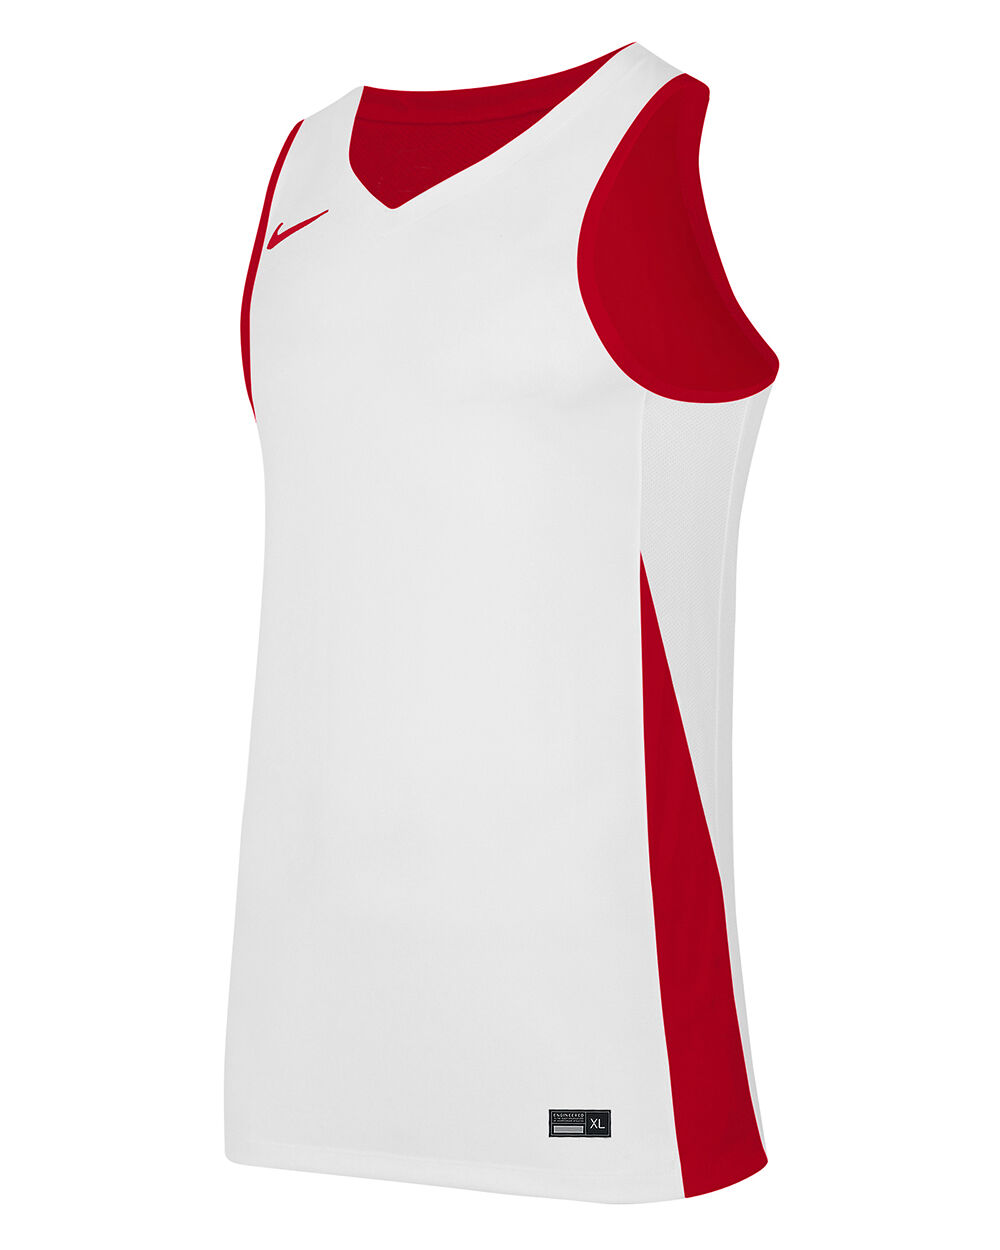 Nike Maglia da basket reversibile Team Rosso e Bianco Bambino NT0204-657 M